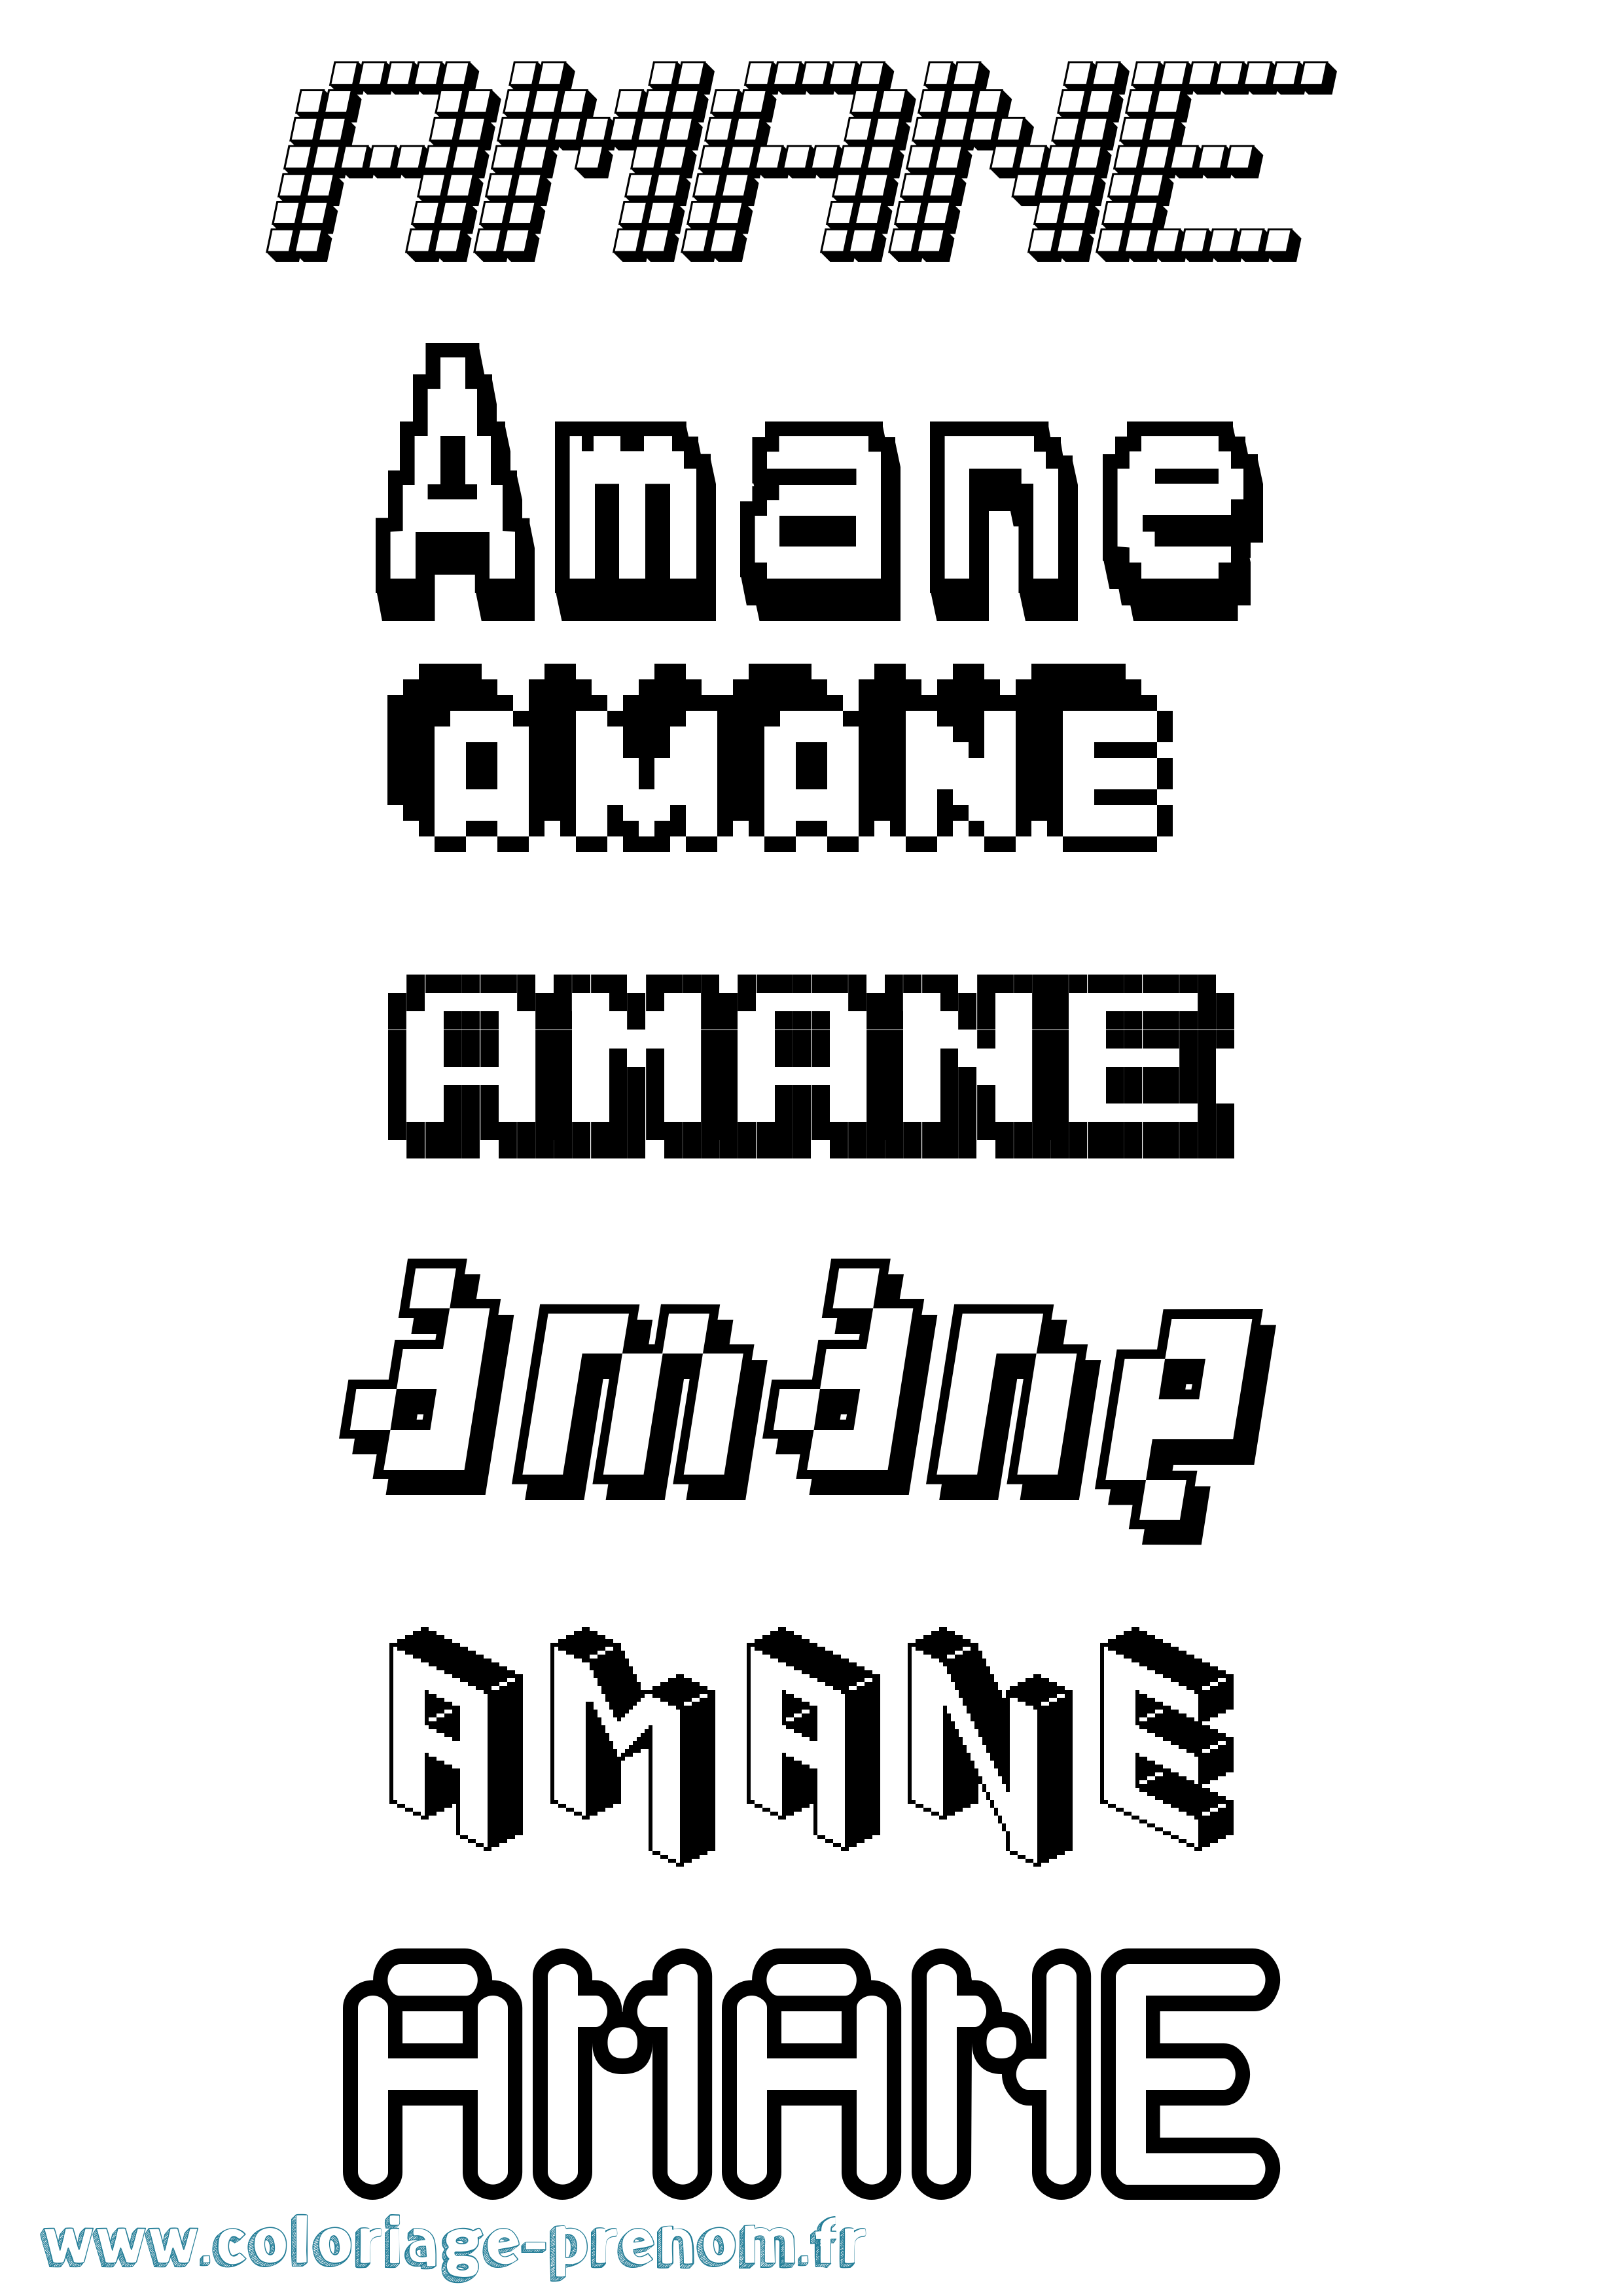 Coloriage prénom Amane Pixel